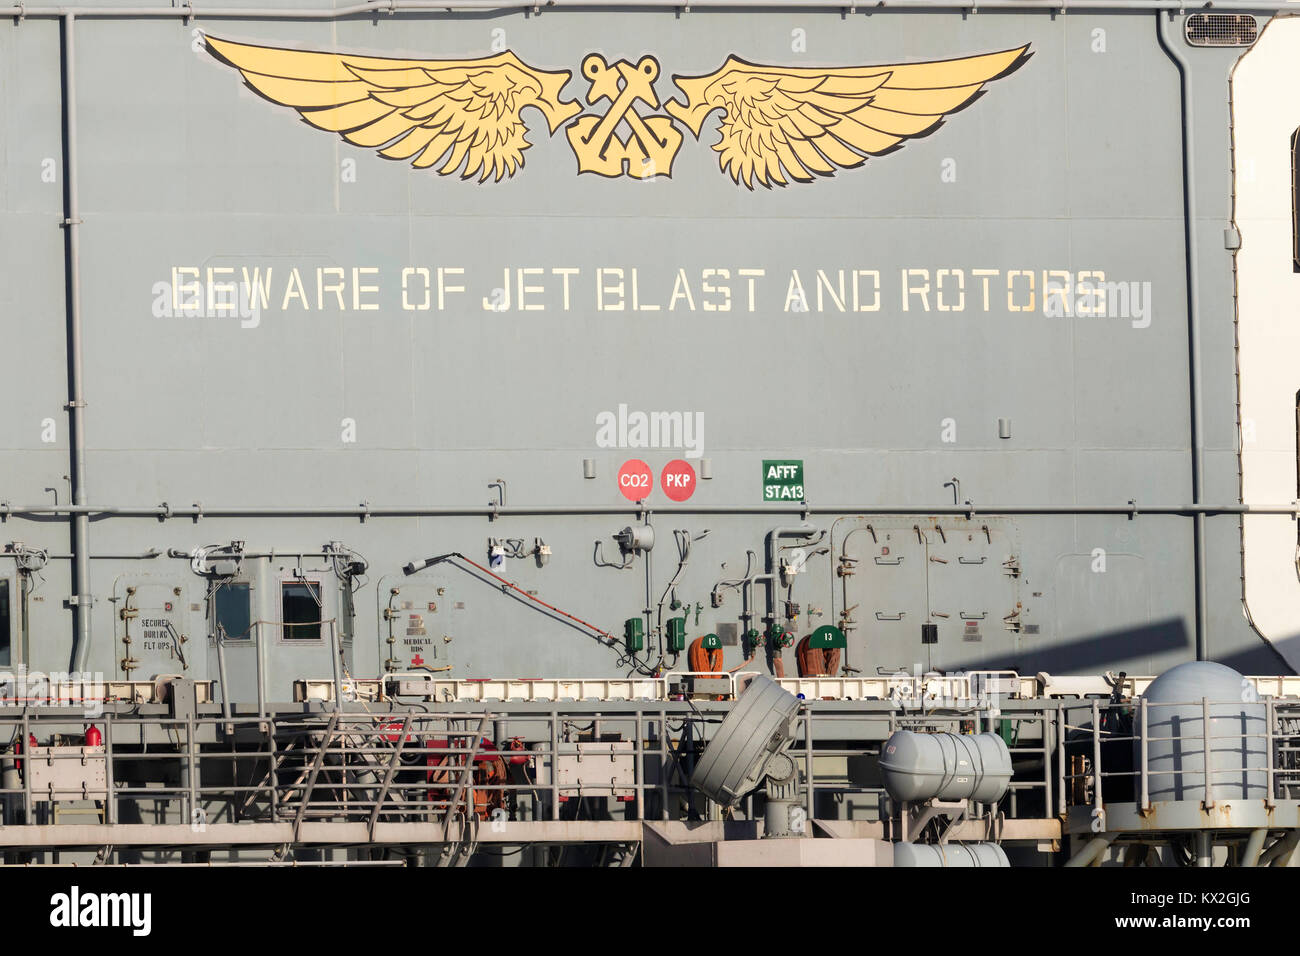 Méfiez-vous souffle des réacteurs et les rotors signe sur le pont du USS Bonhomme Richard (LHD-6) Wasp-class amphibious assa Banque D'Images